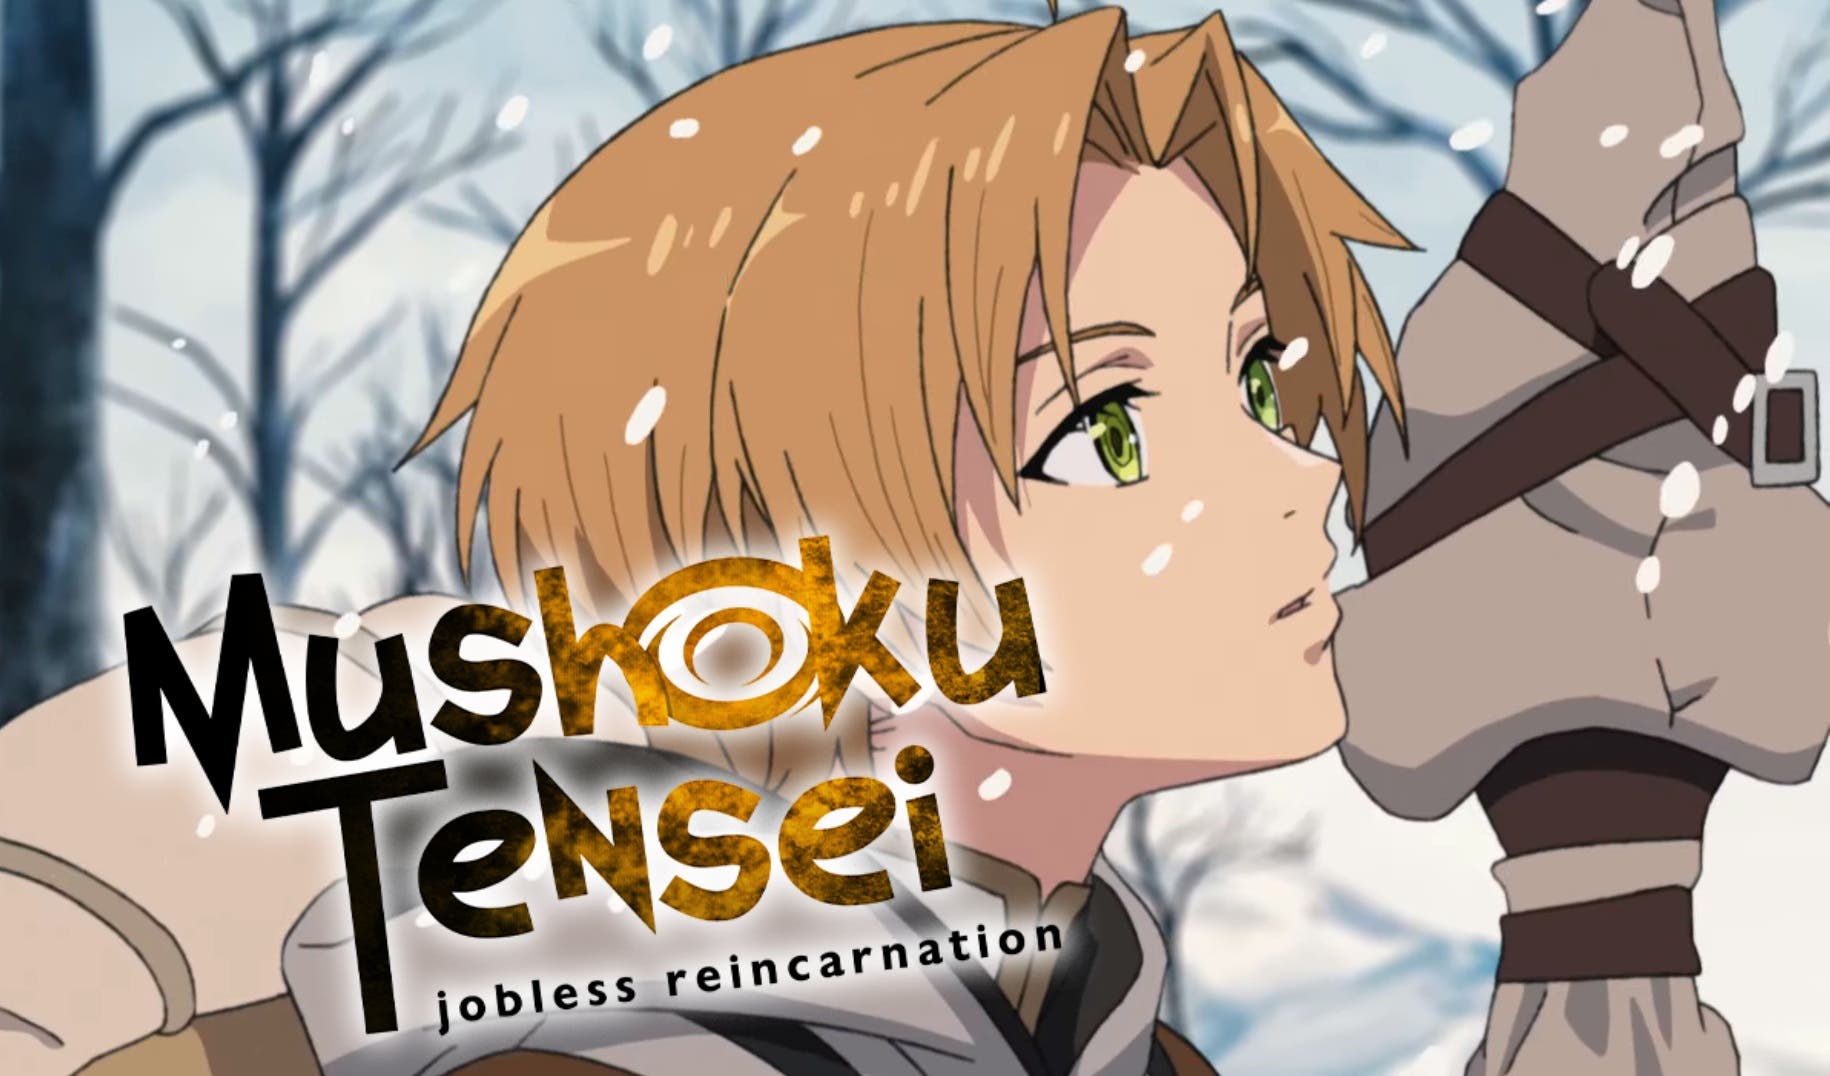 Mushoku Tensei temporada 2 estreno julio #iseknews #mushokutensei